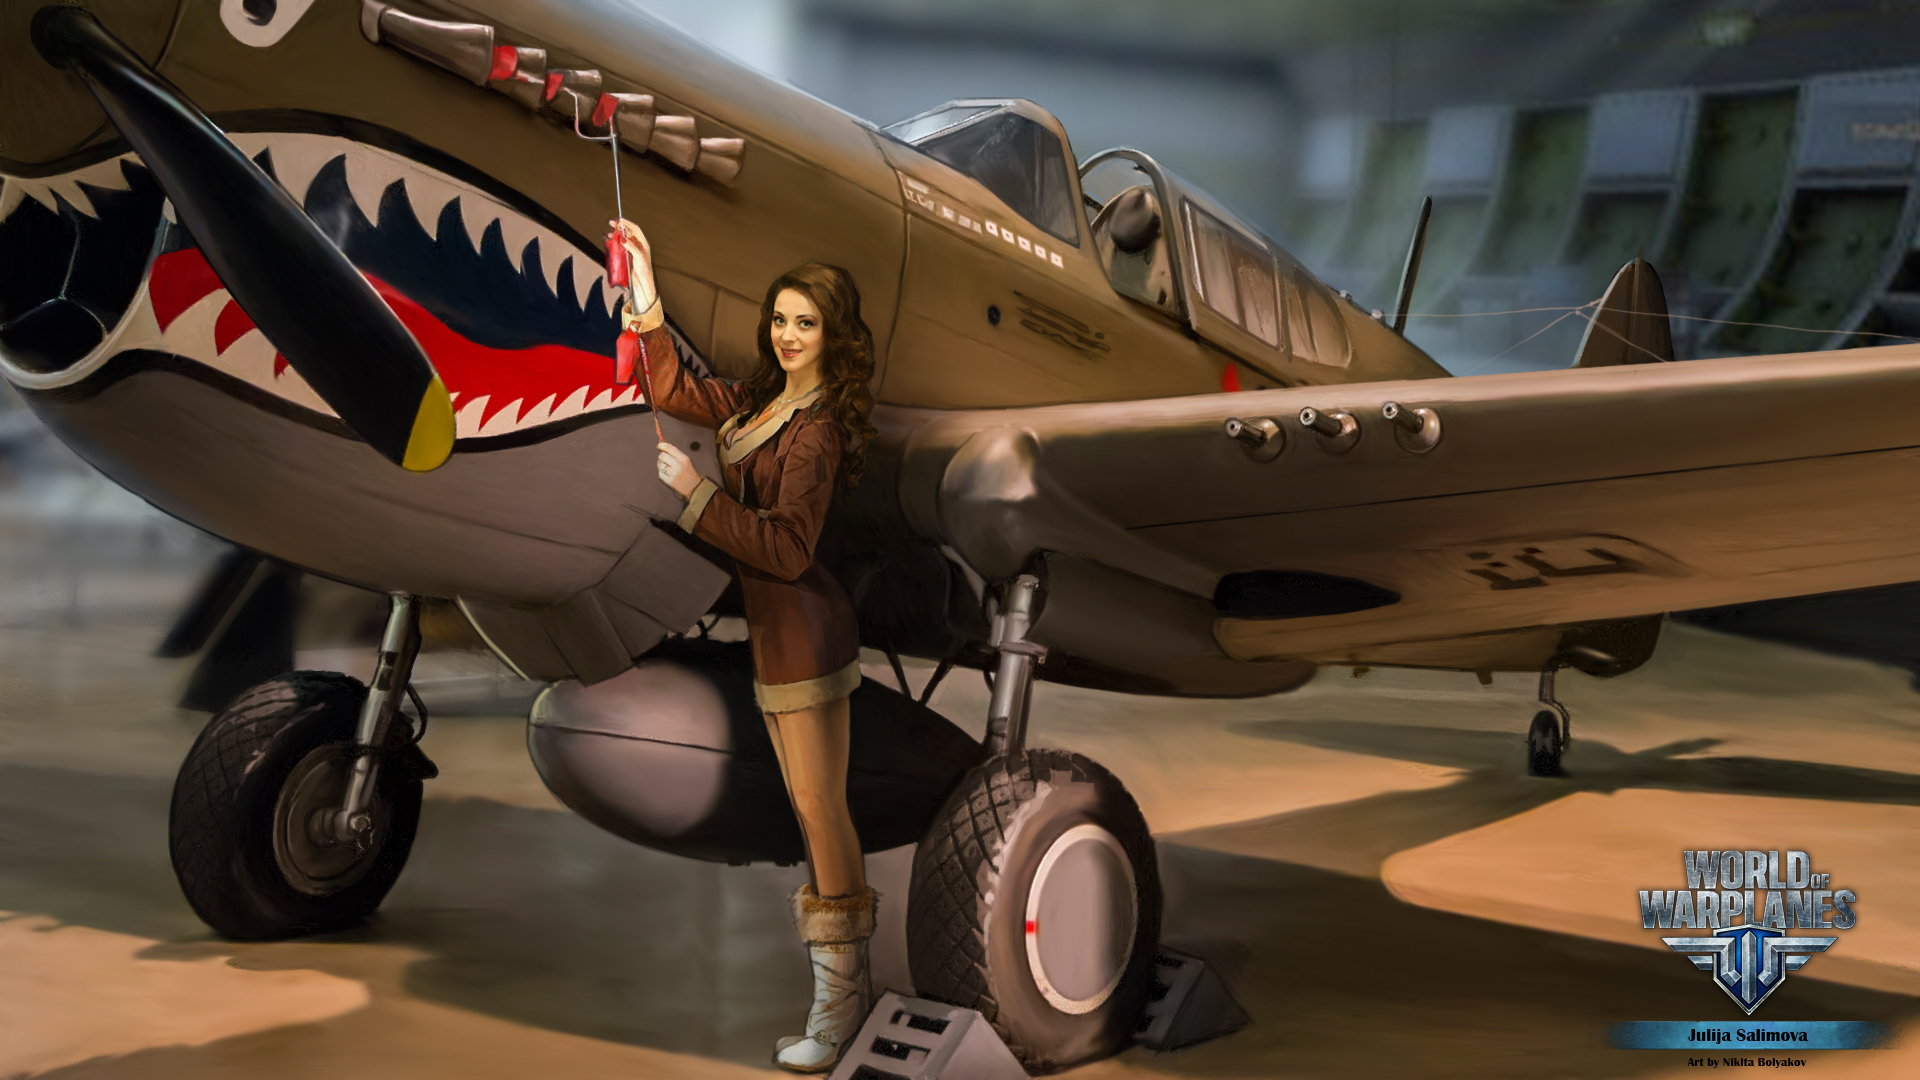 壁紙 19x1080 World Of Warplanes 描かれた壁紙 飛行機 Nikita Bolyakov ゲーム 少女 ダウンロード 写真